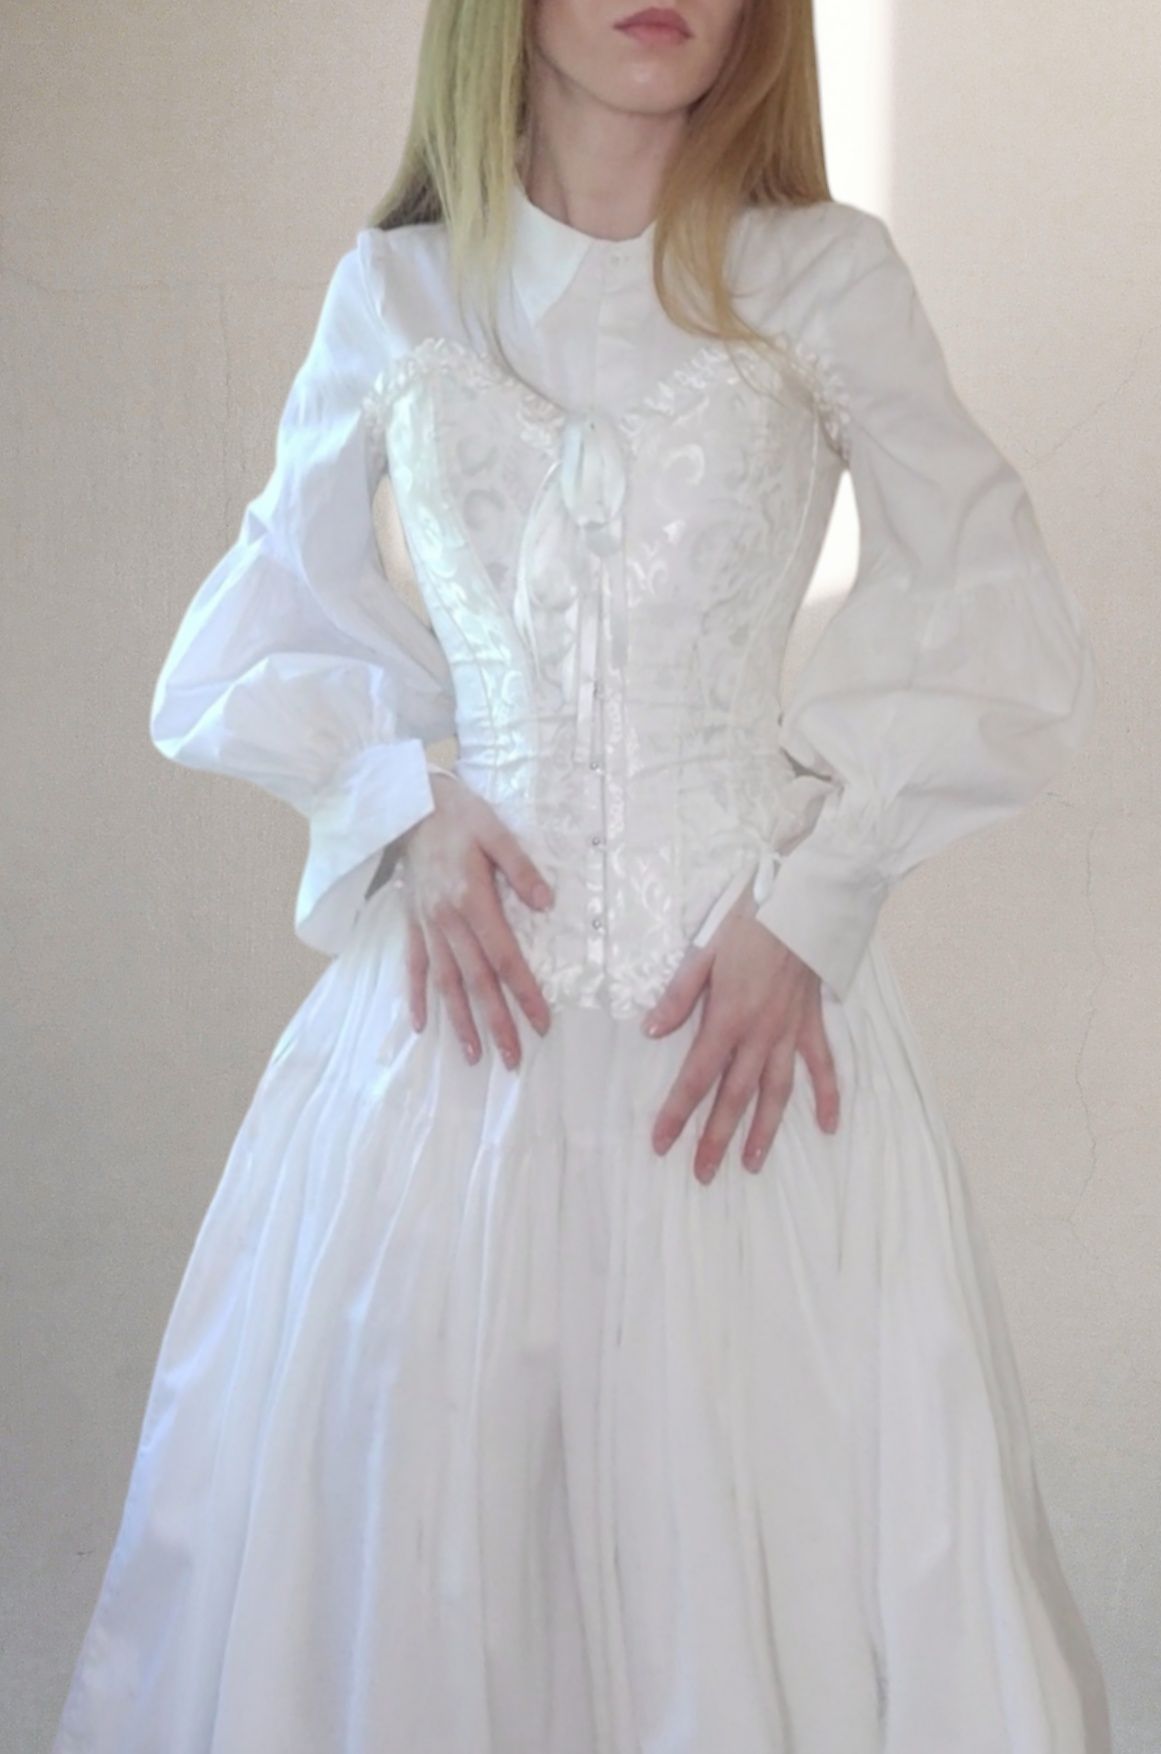 Ексклюзивна сукня у вікторіанському стилі під вінтаж fairy angel